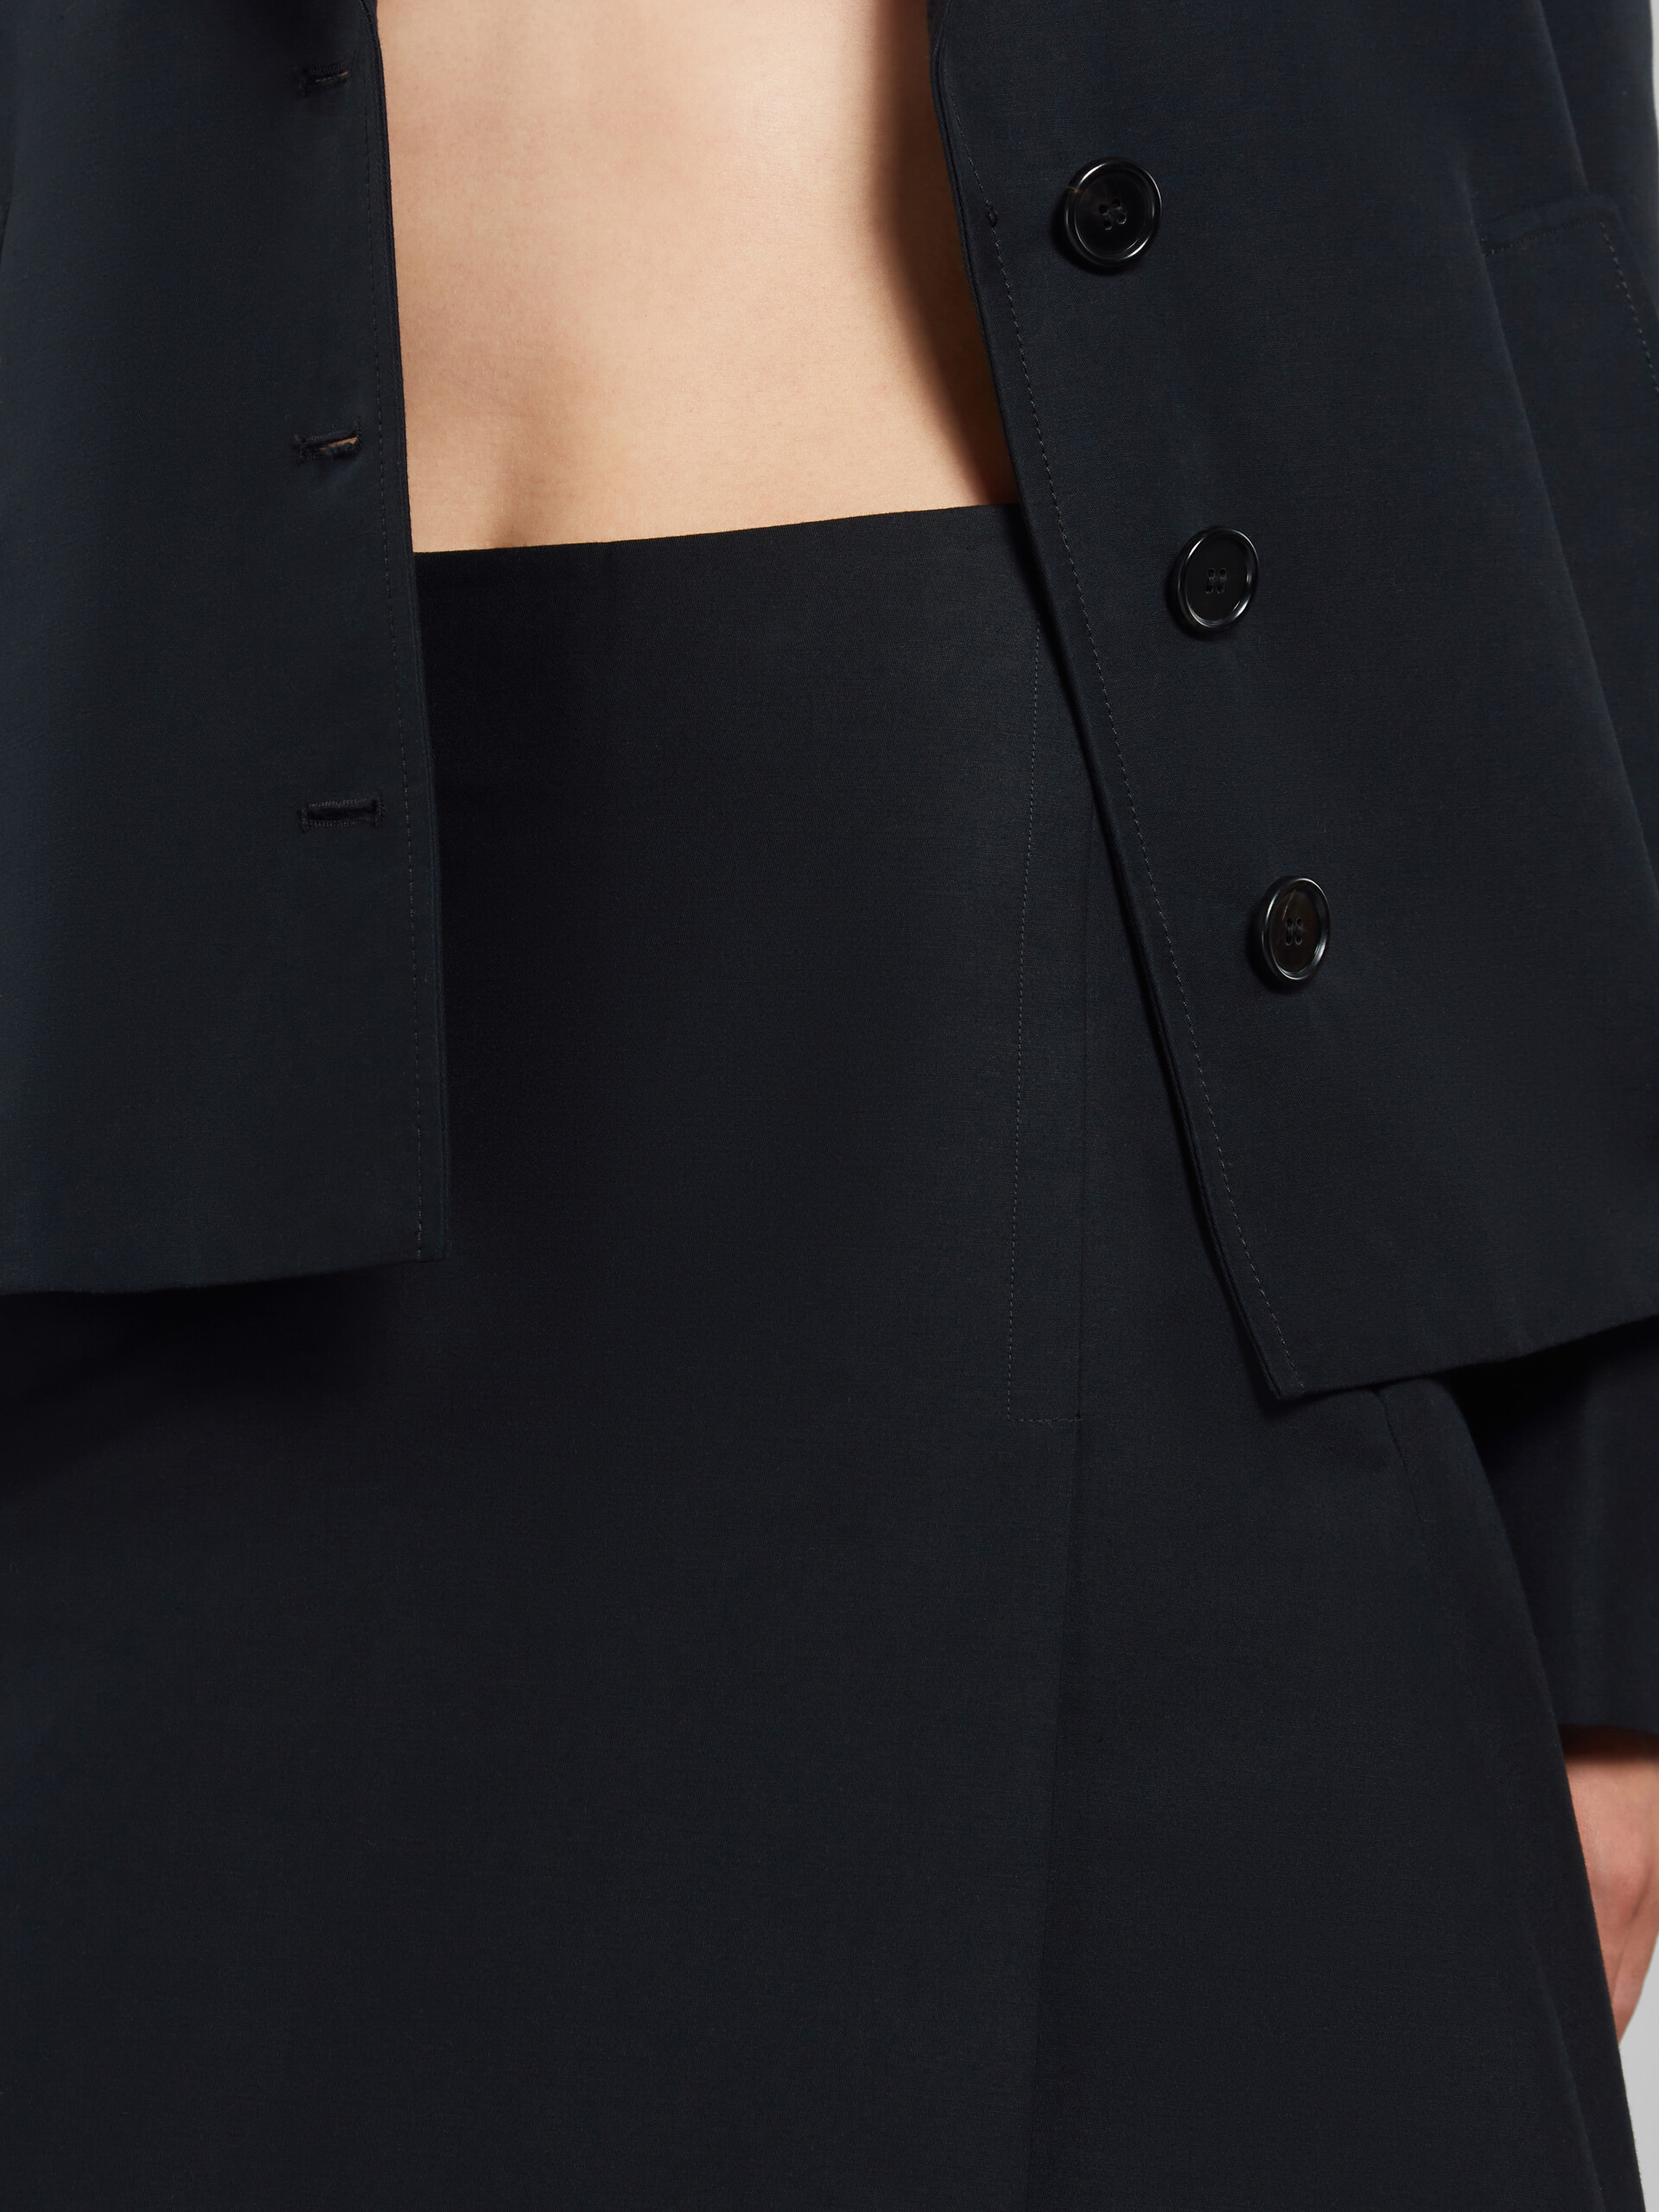 Falda midi negra de cady con maxiplisados - Faldas - Image 4